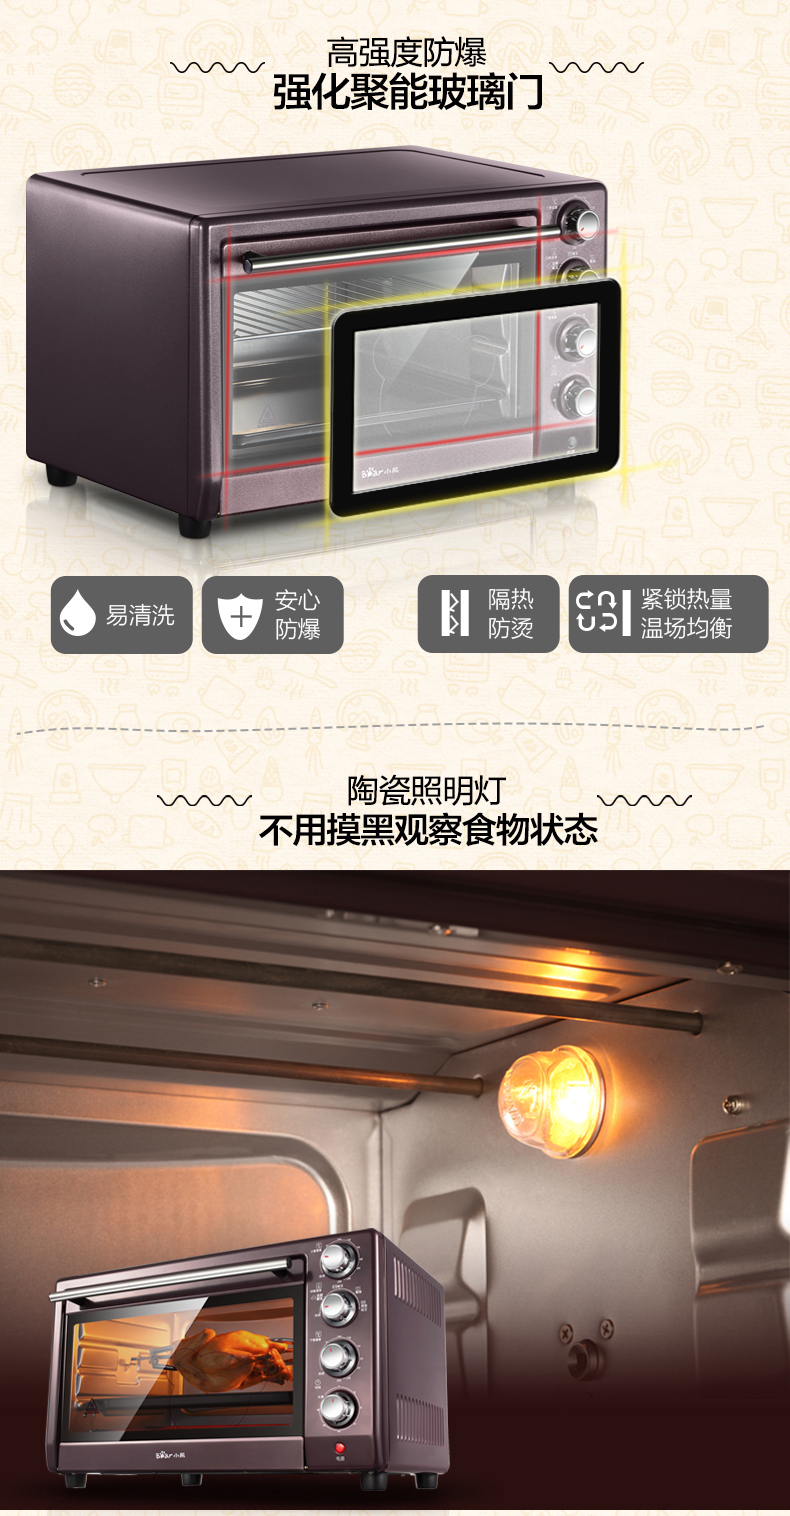 小熊（Bear） 电烤箱DKX-230UB 家用烘焙烤箱 多功能电烤箱上下独立控温